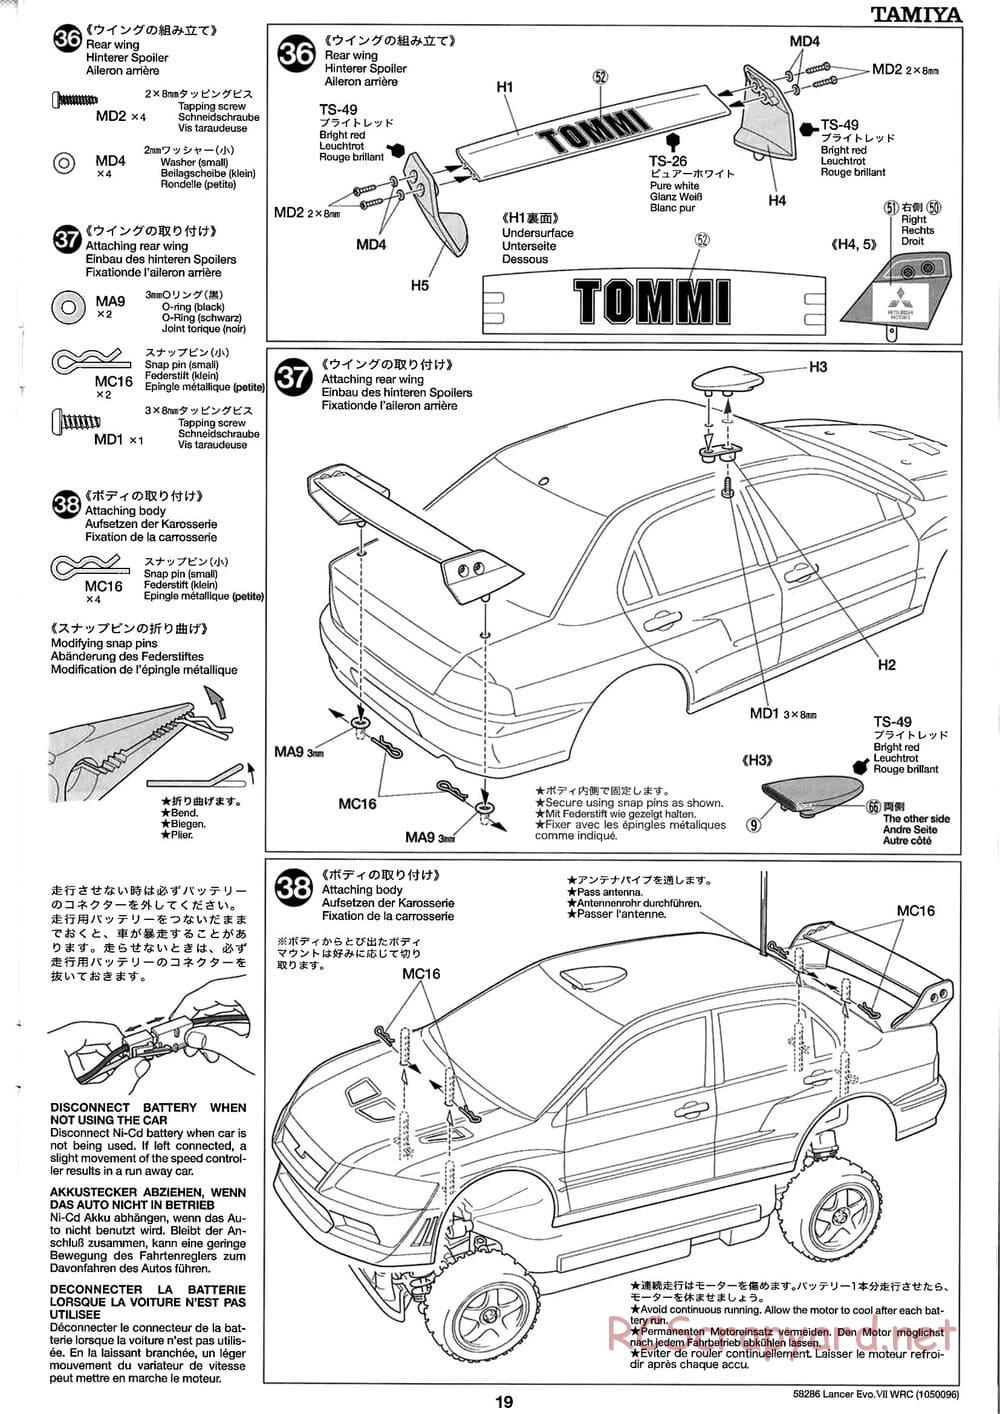 Tamiya - Mitsubishi Lancer Evolution VII WRC - TB-01 Chassis - Manual - Page 19